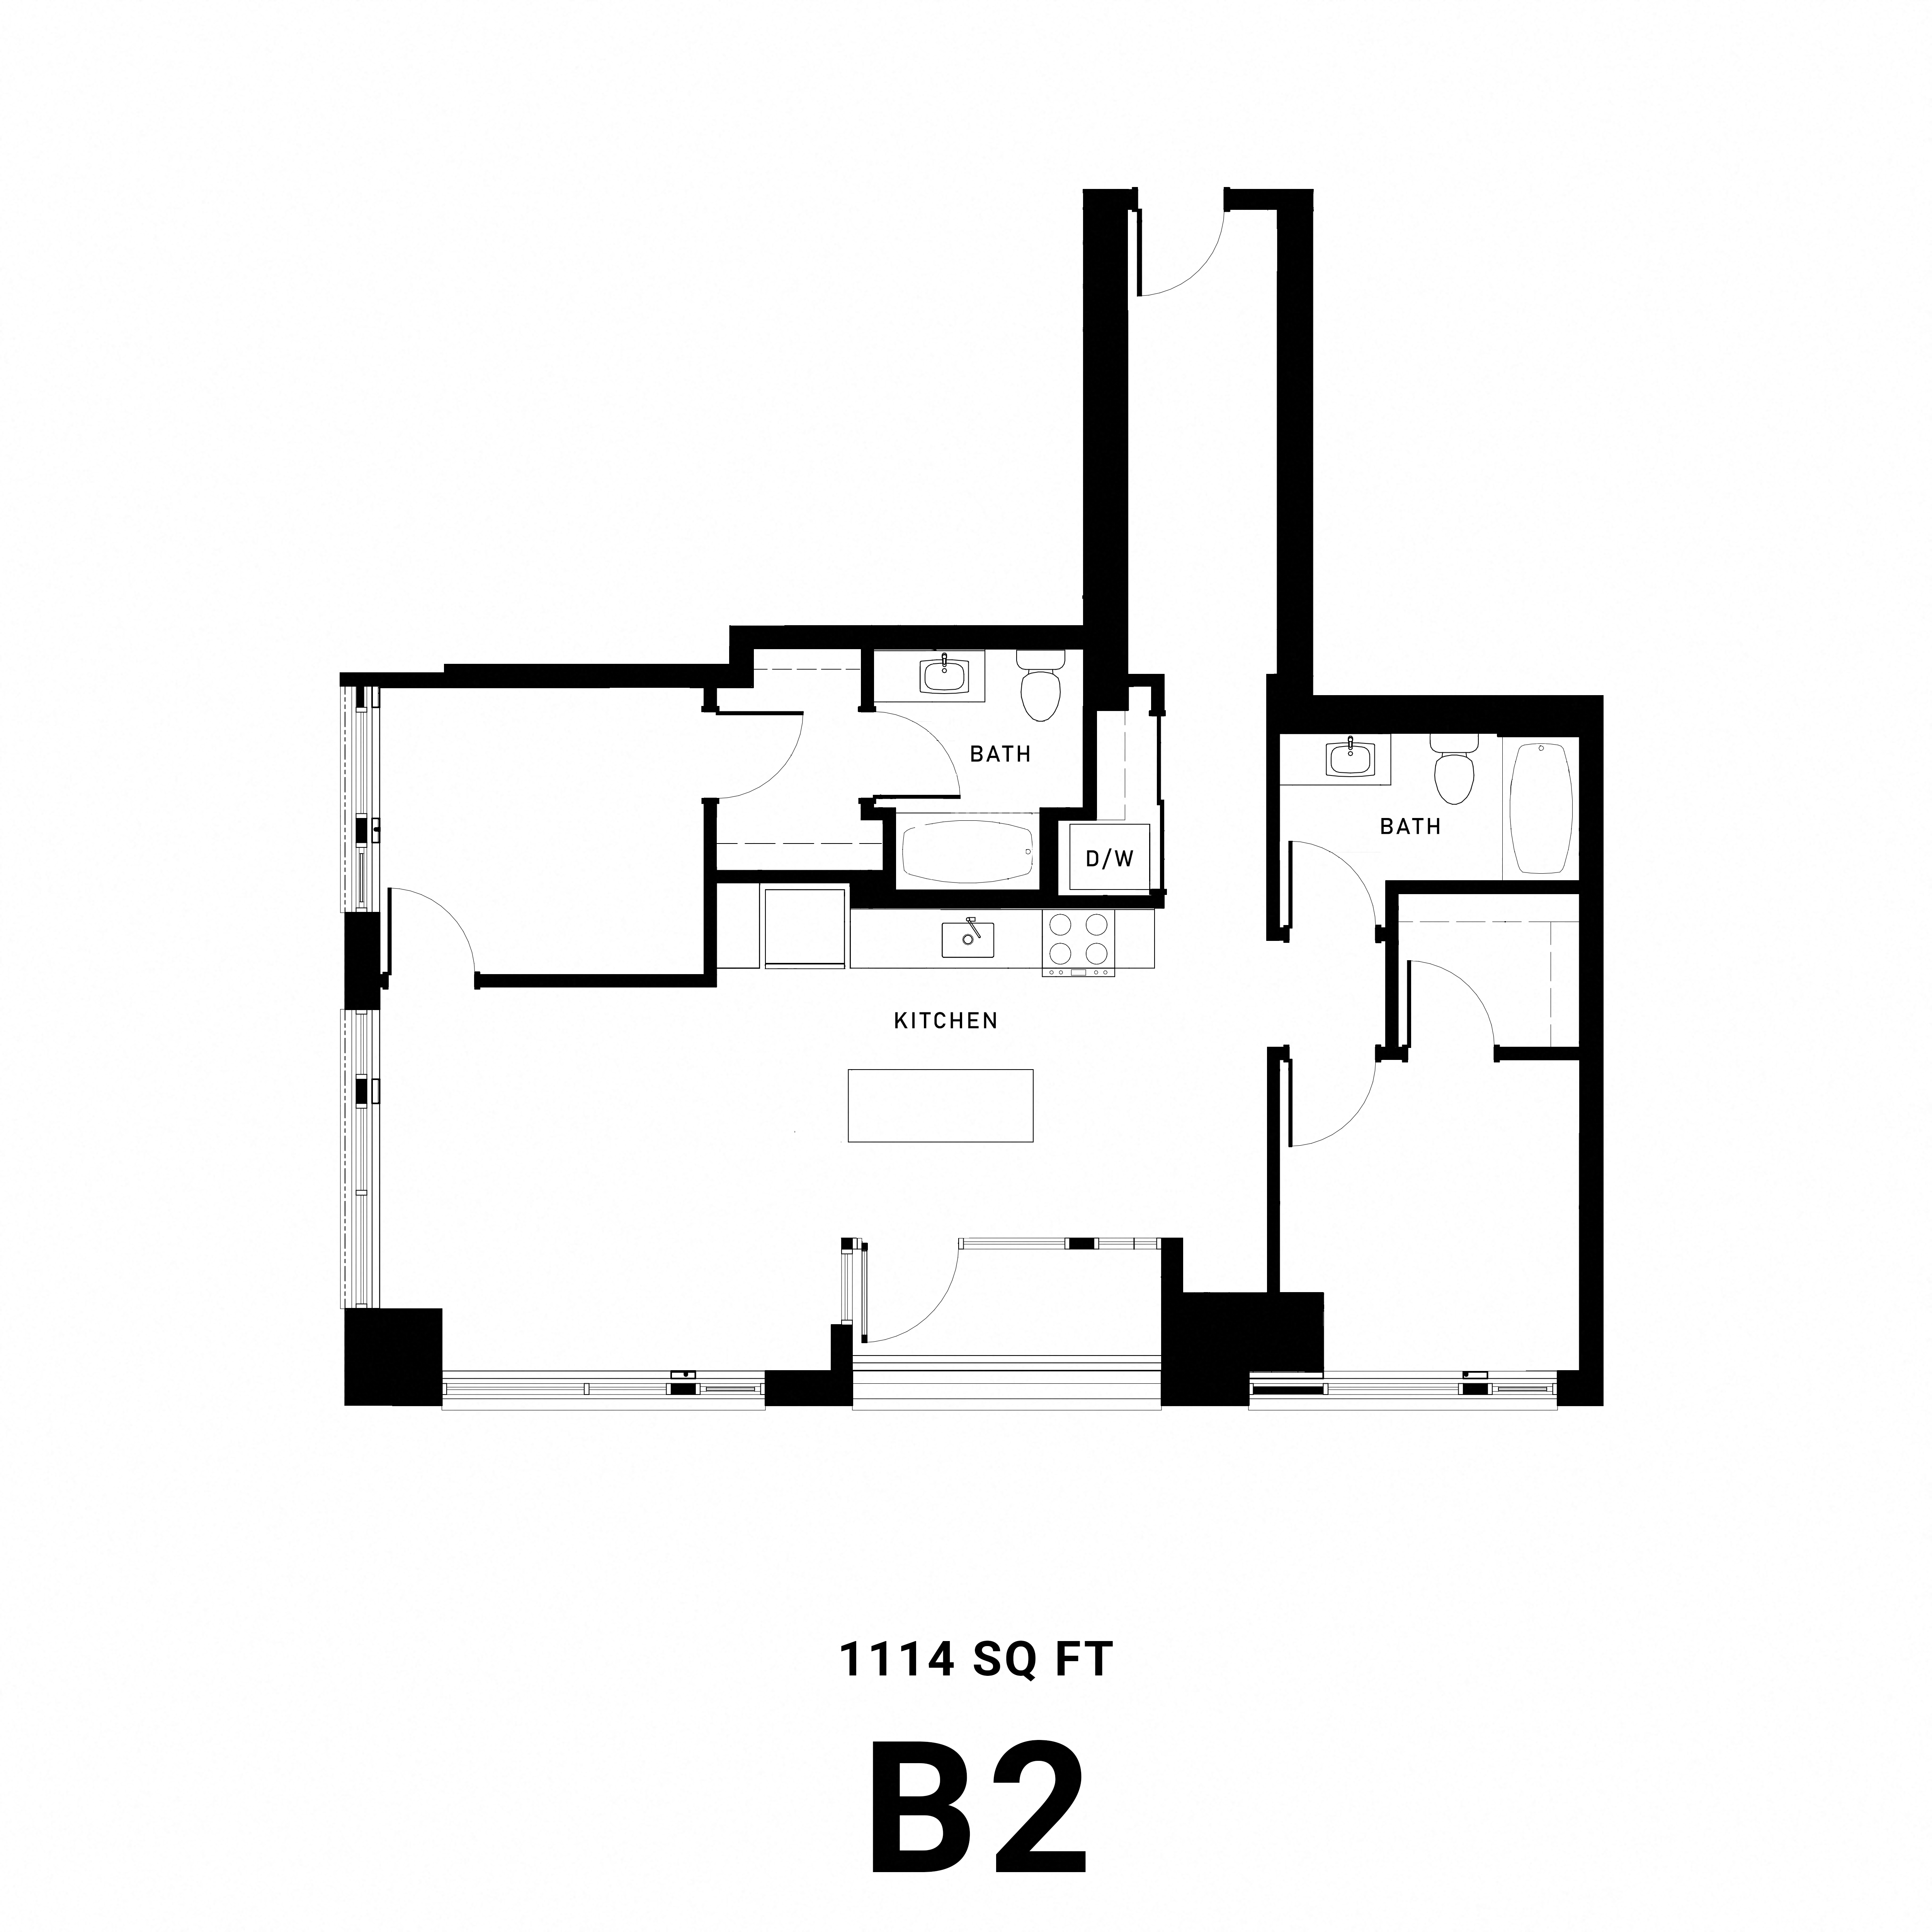 Floorplan B2